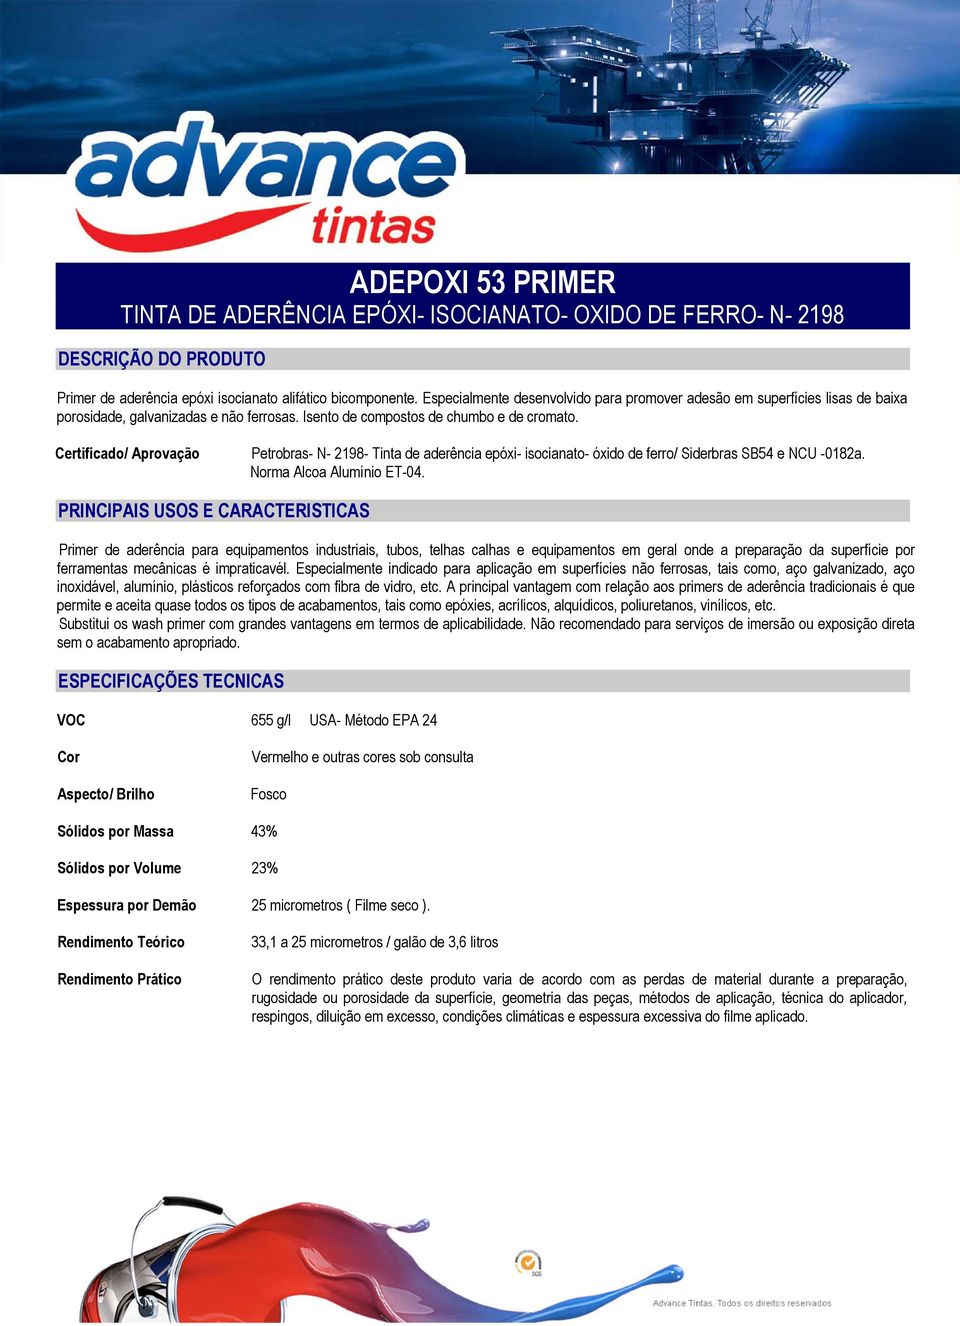 Certificado/ Aprovação Petrobras- N- 2198- Tinta de aderência epóxi- isocianato- óxido de ferro/ Siderbras SB54 e NCU -0182a. Norma Alcoa Alumínio ET-04.